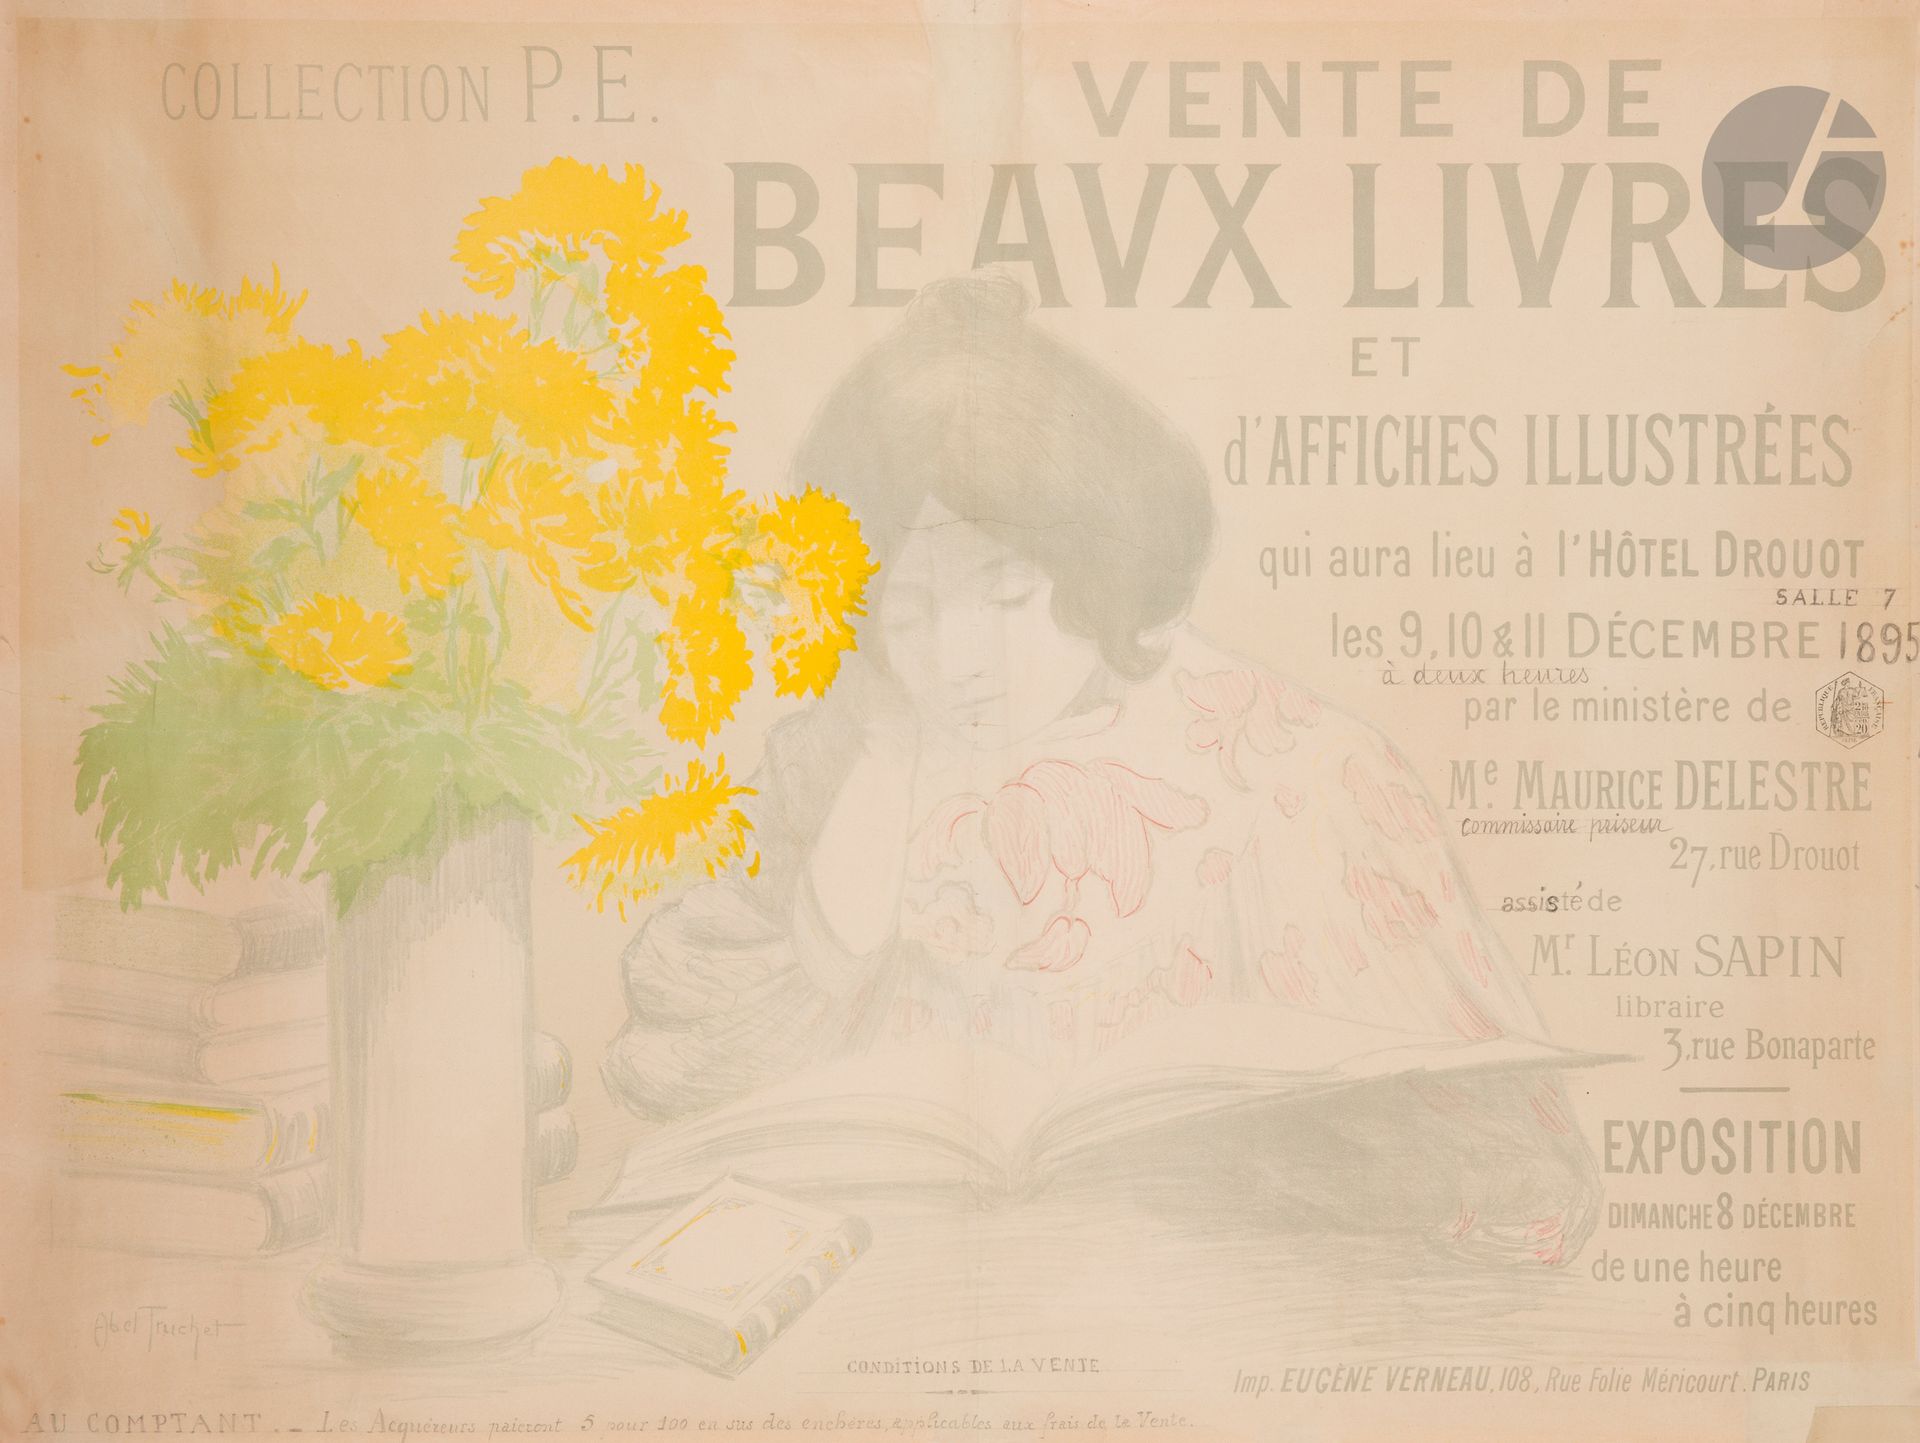 Null Abel TRUCHET (1857-1918)
Vente de beaux livres et d’affiches illustrées, co&hellip;